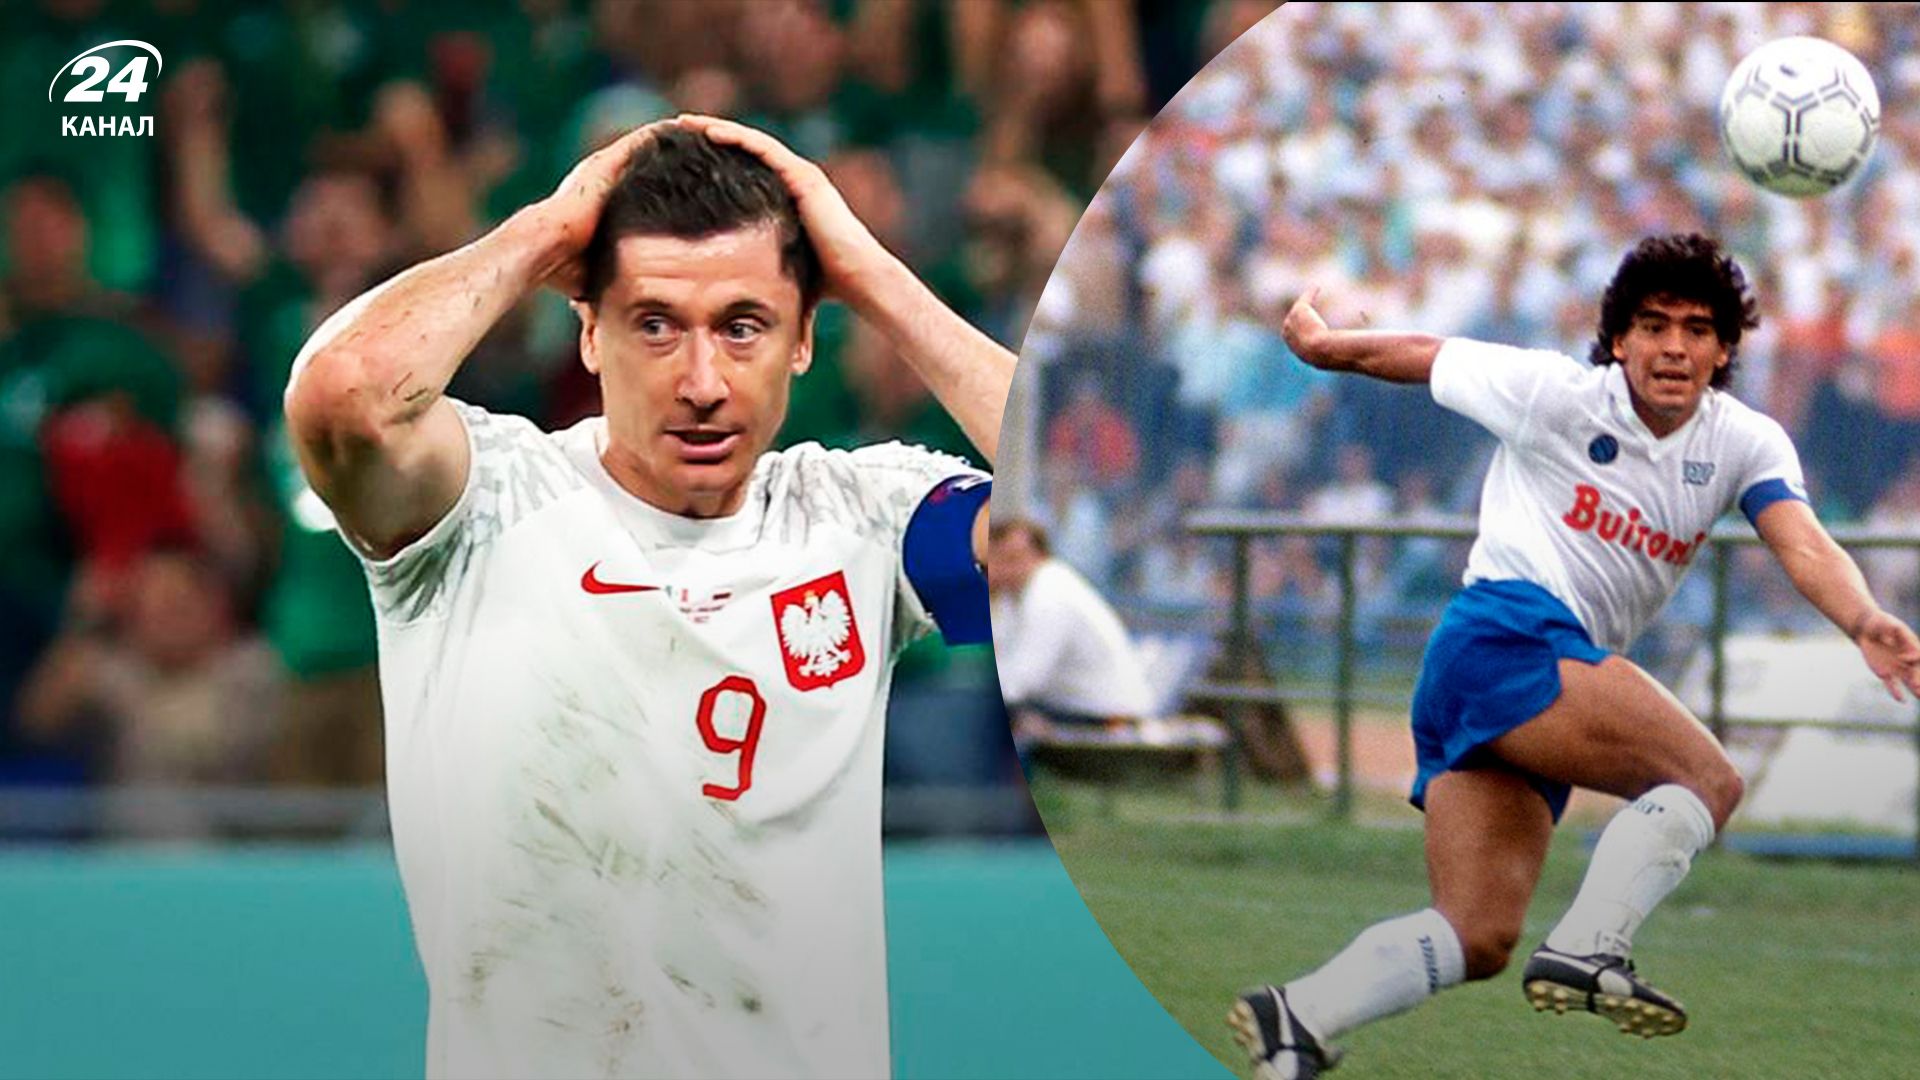 Тренер сборной Польши сравнил Левандовского с Марадоной: что случилось